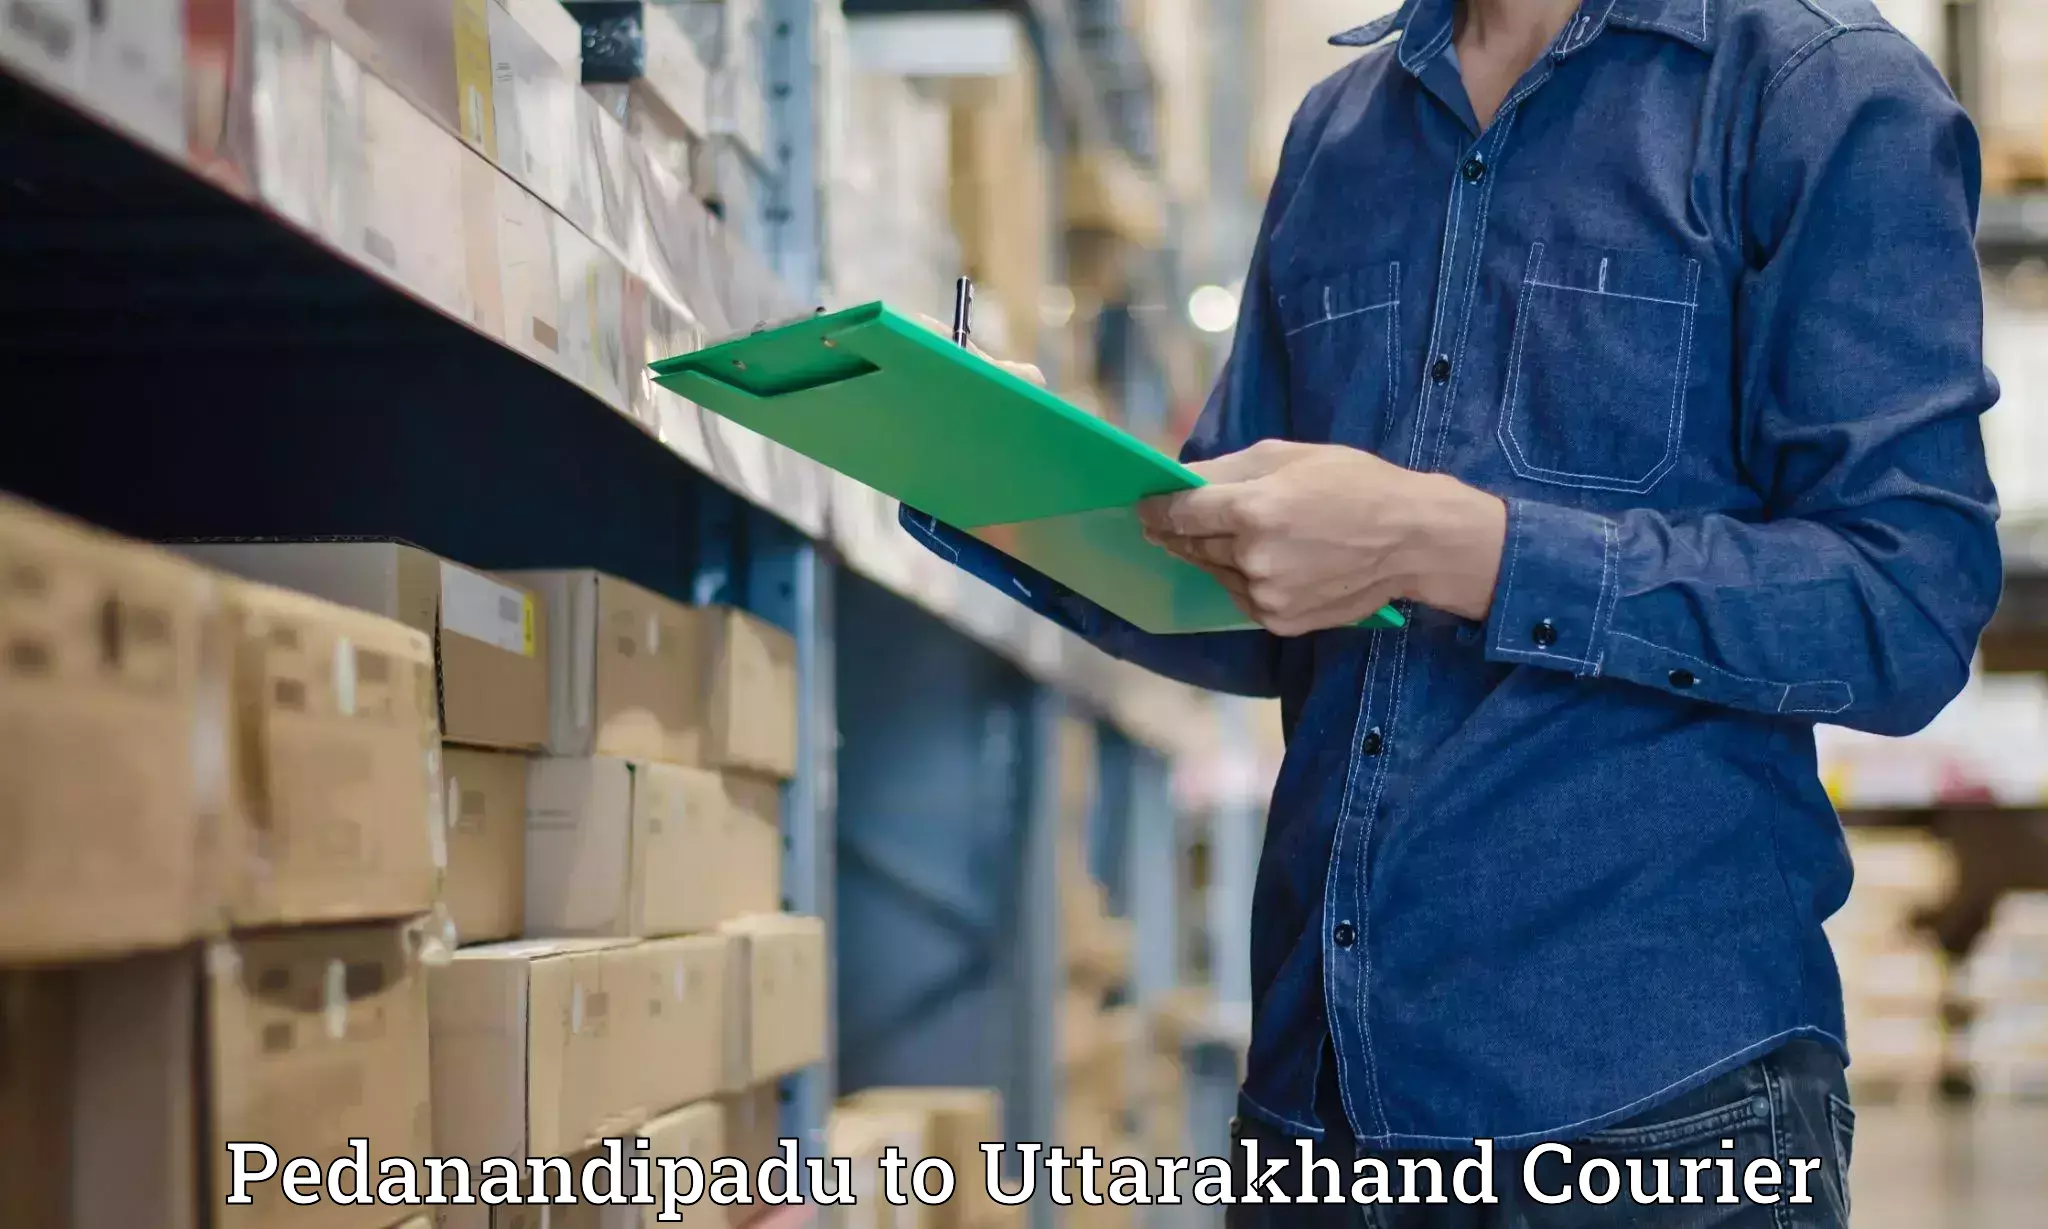 Ocean freight courier Pedanandipadu to Uttarakhand